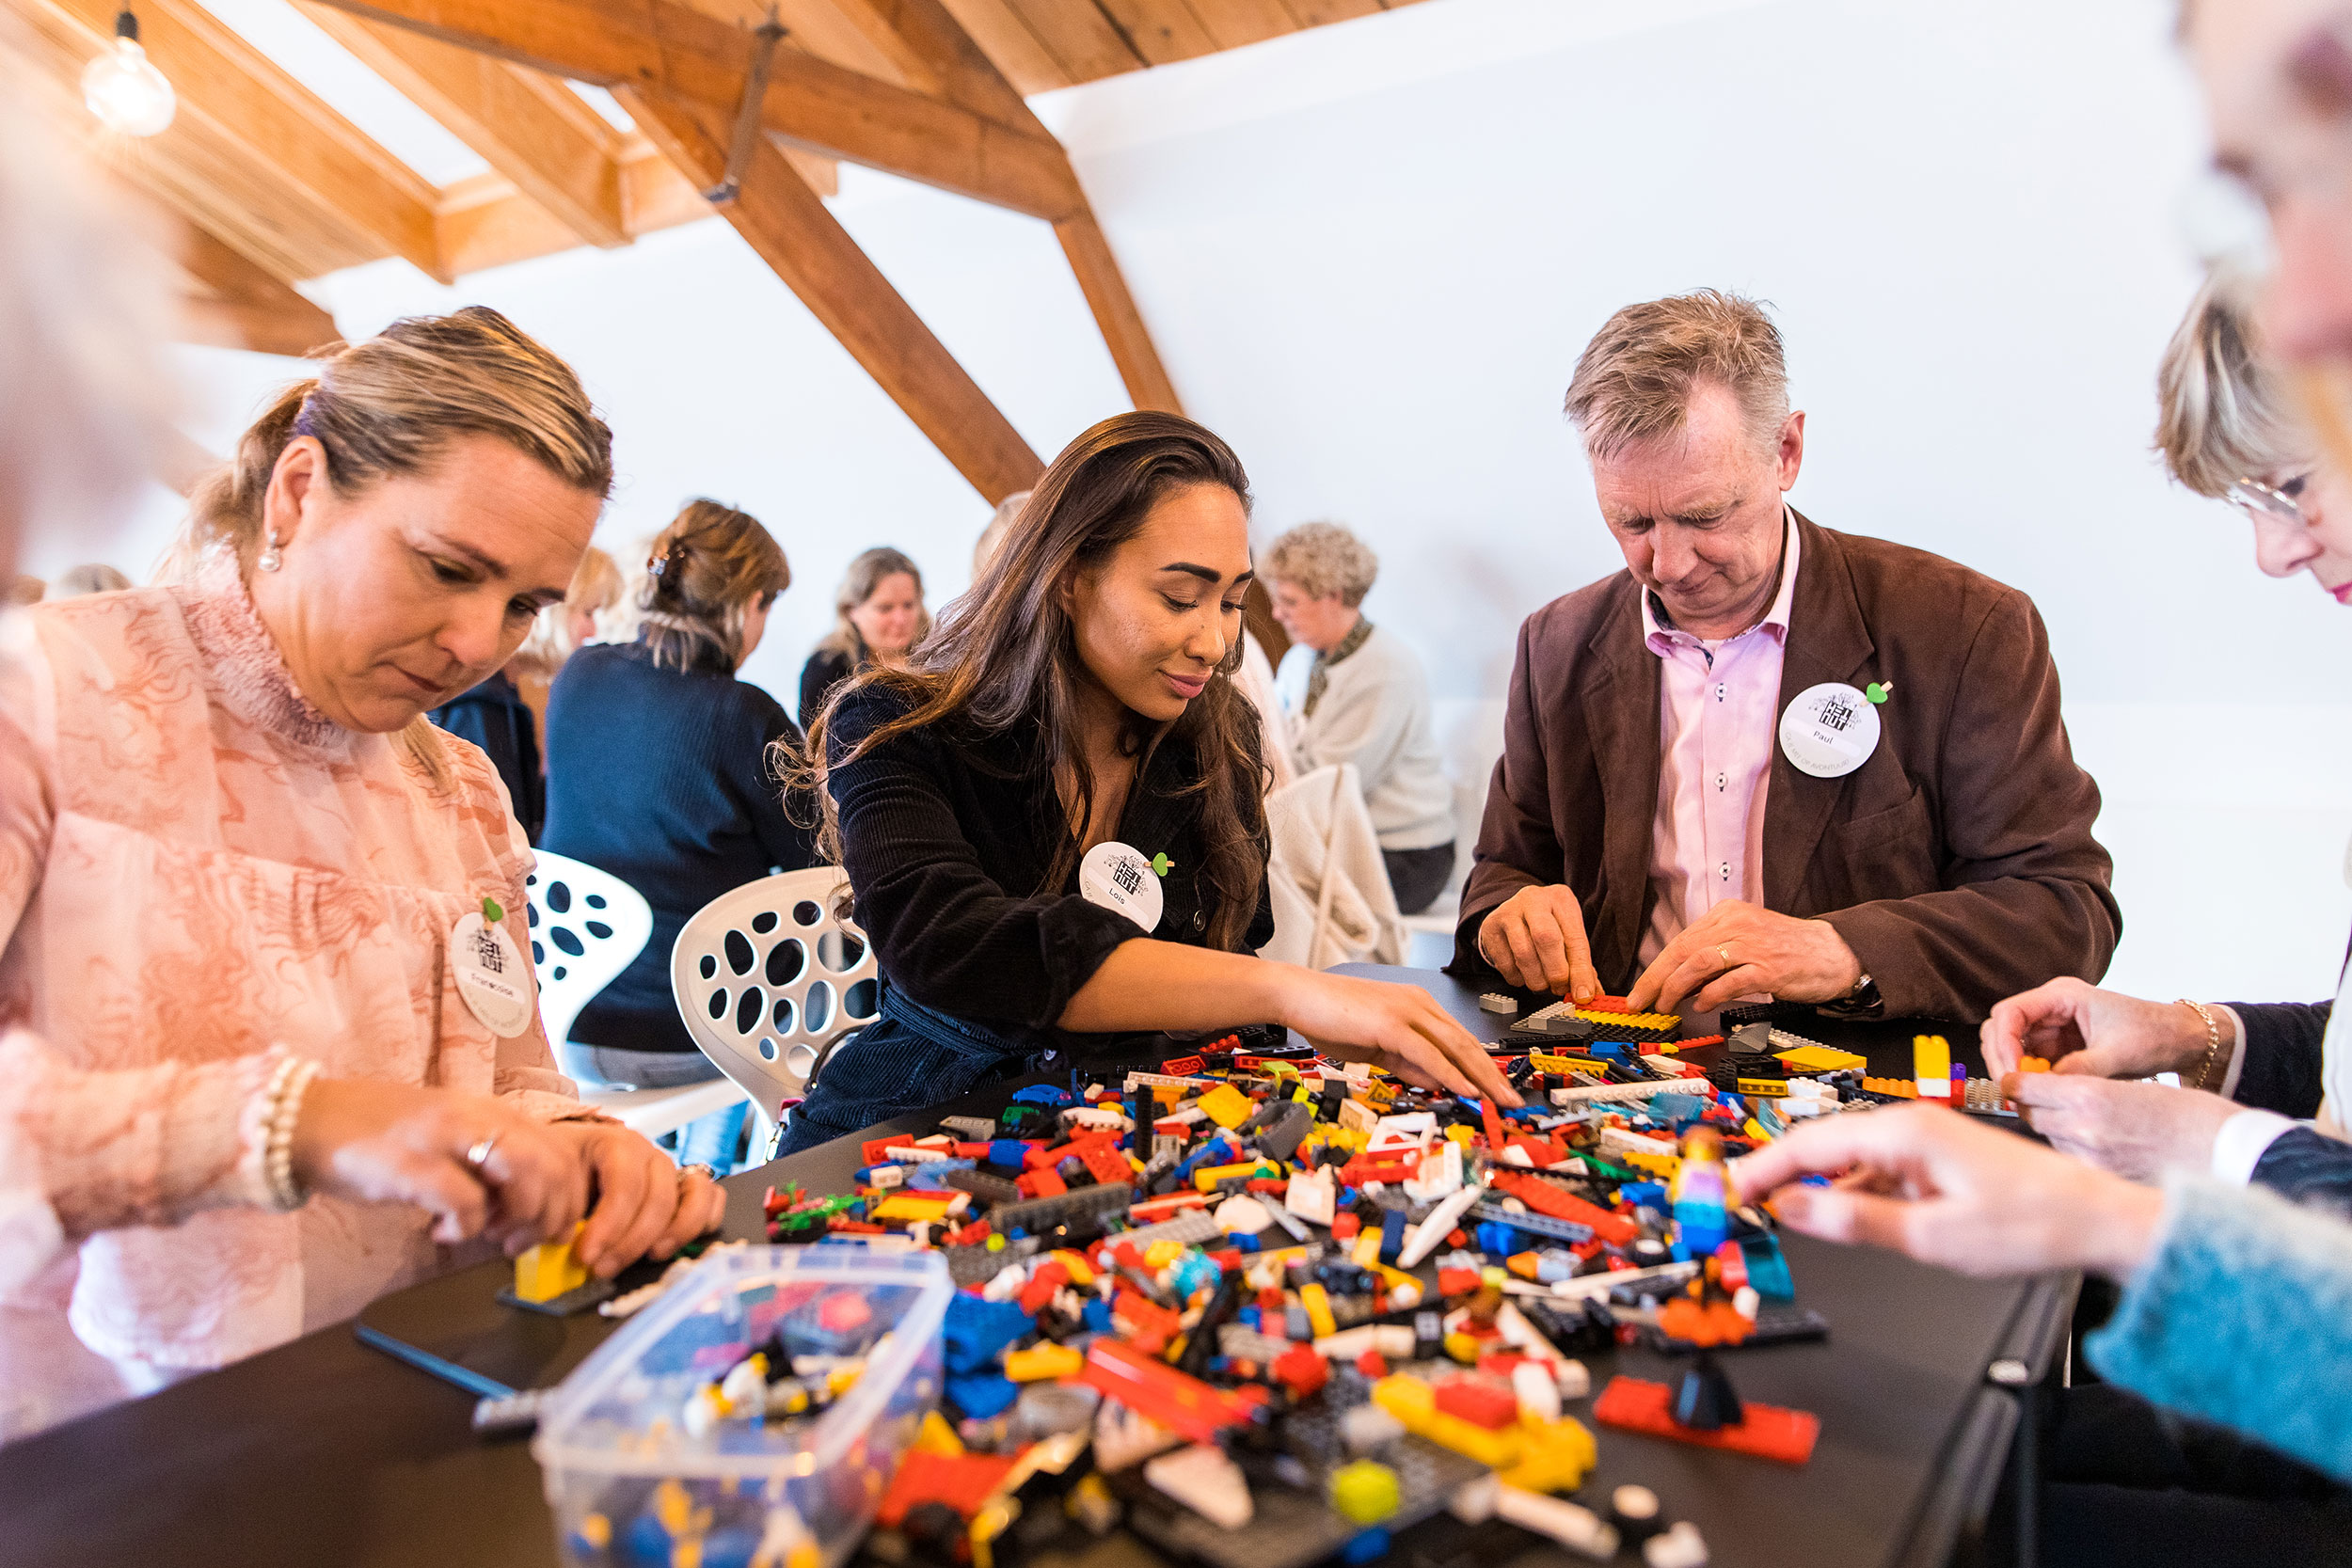 Lego teambuilding workshop van THE POWER OF BRICKS